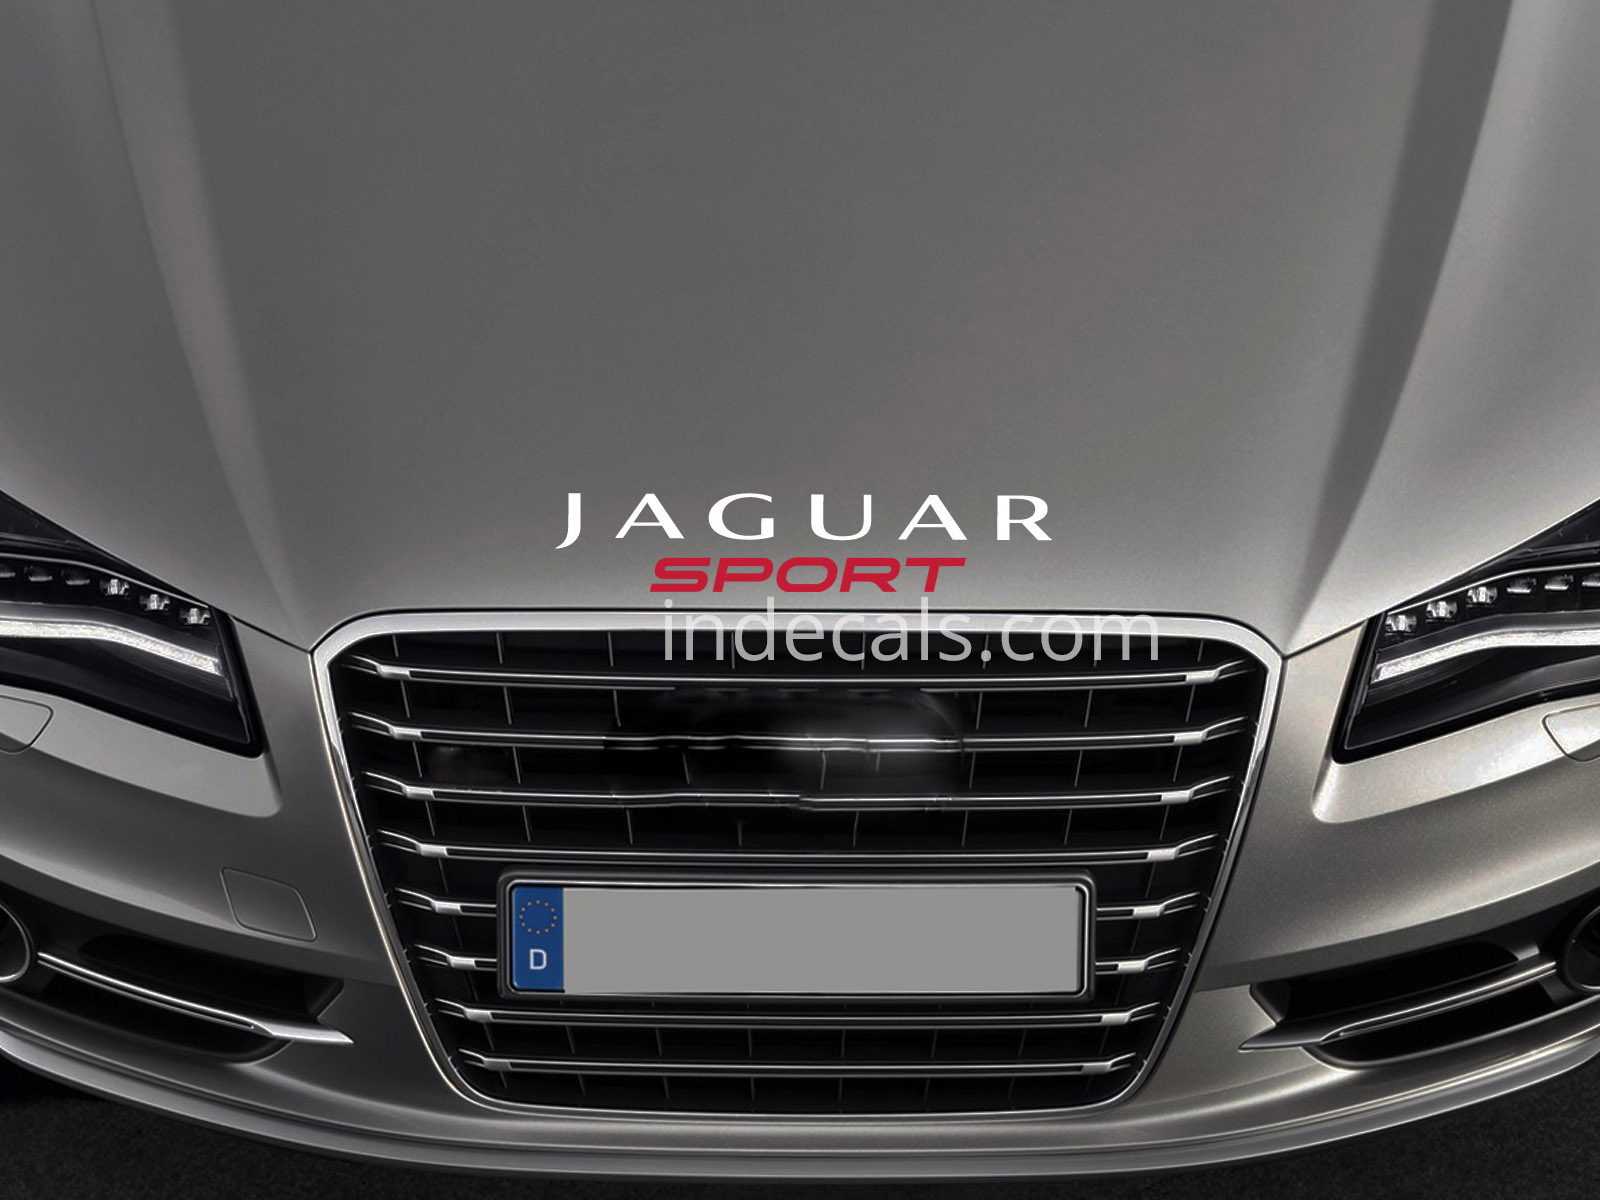 1 x Jaguar Sport Sticker for Bonnet - White & Red